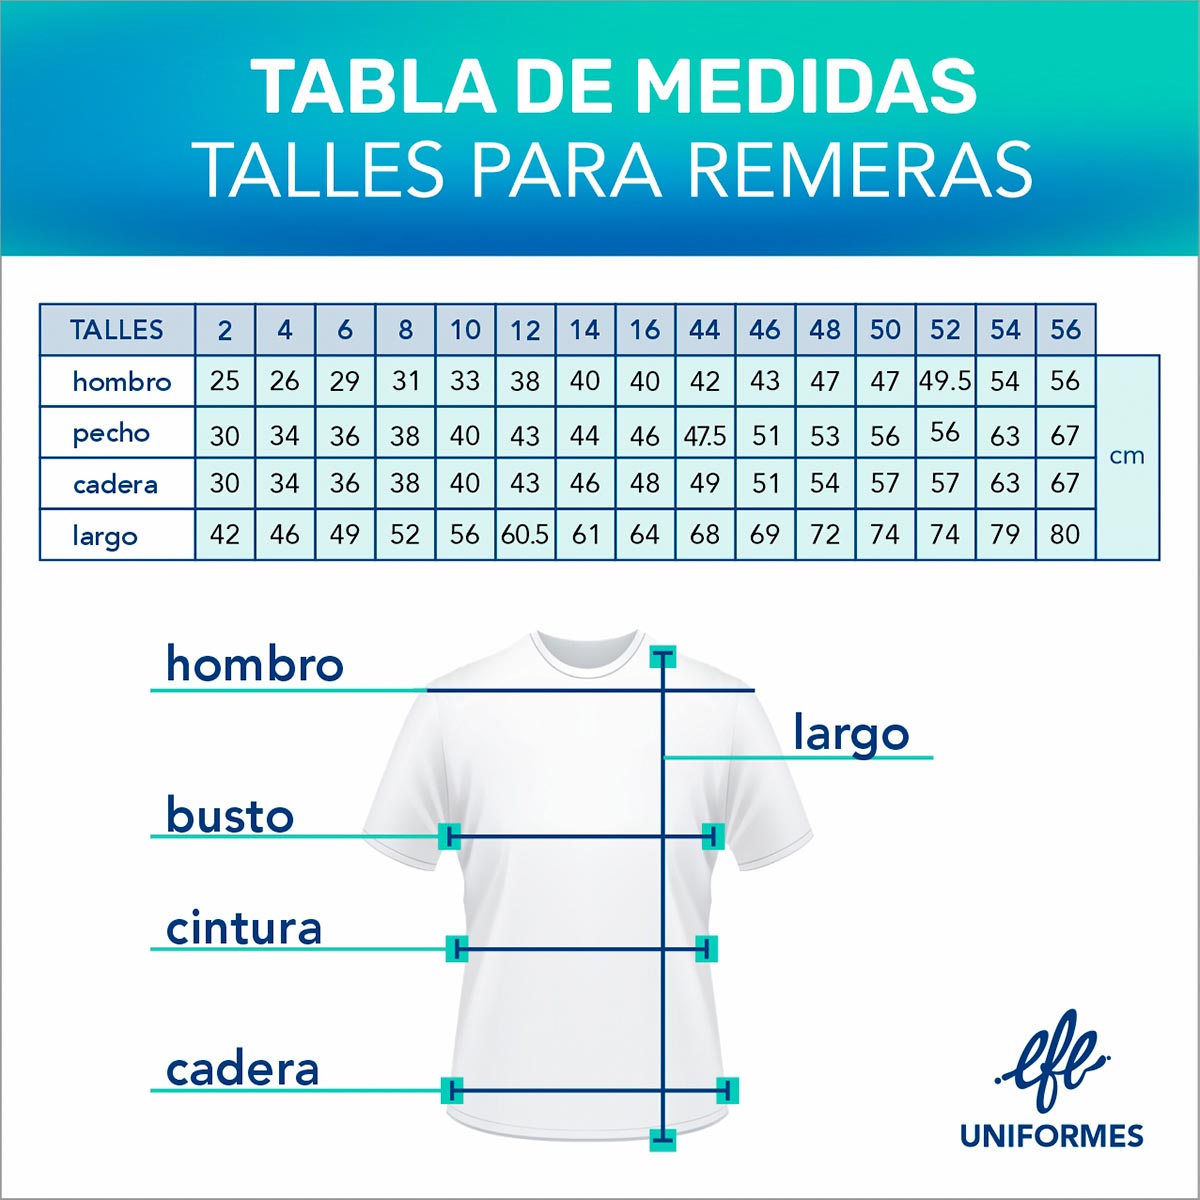 TABLA DE MEDIDAS REMERAS